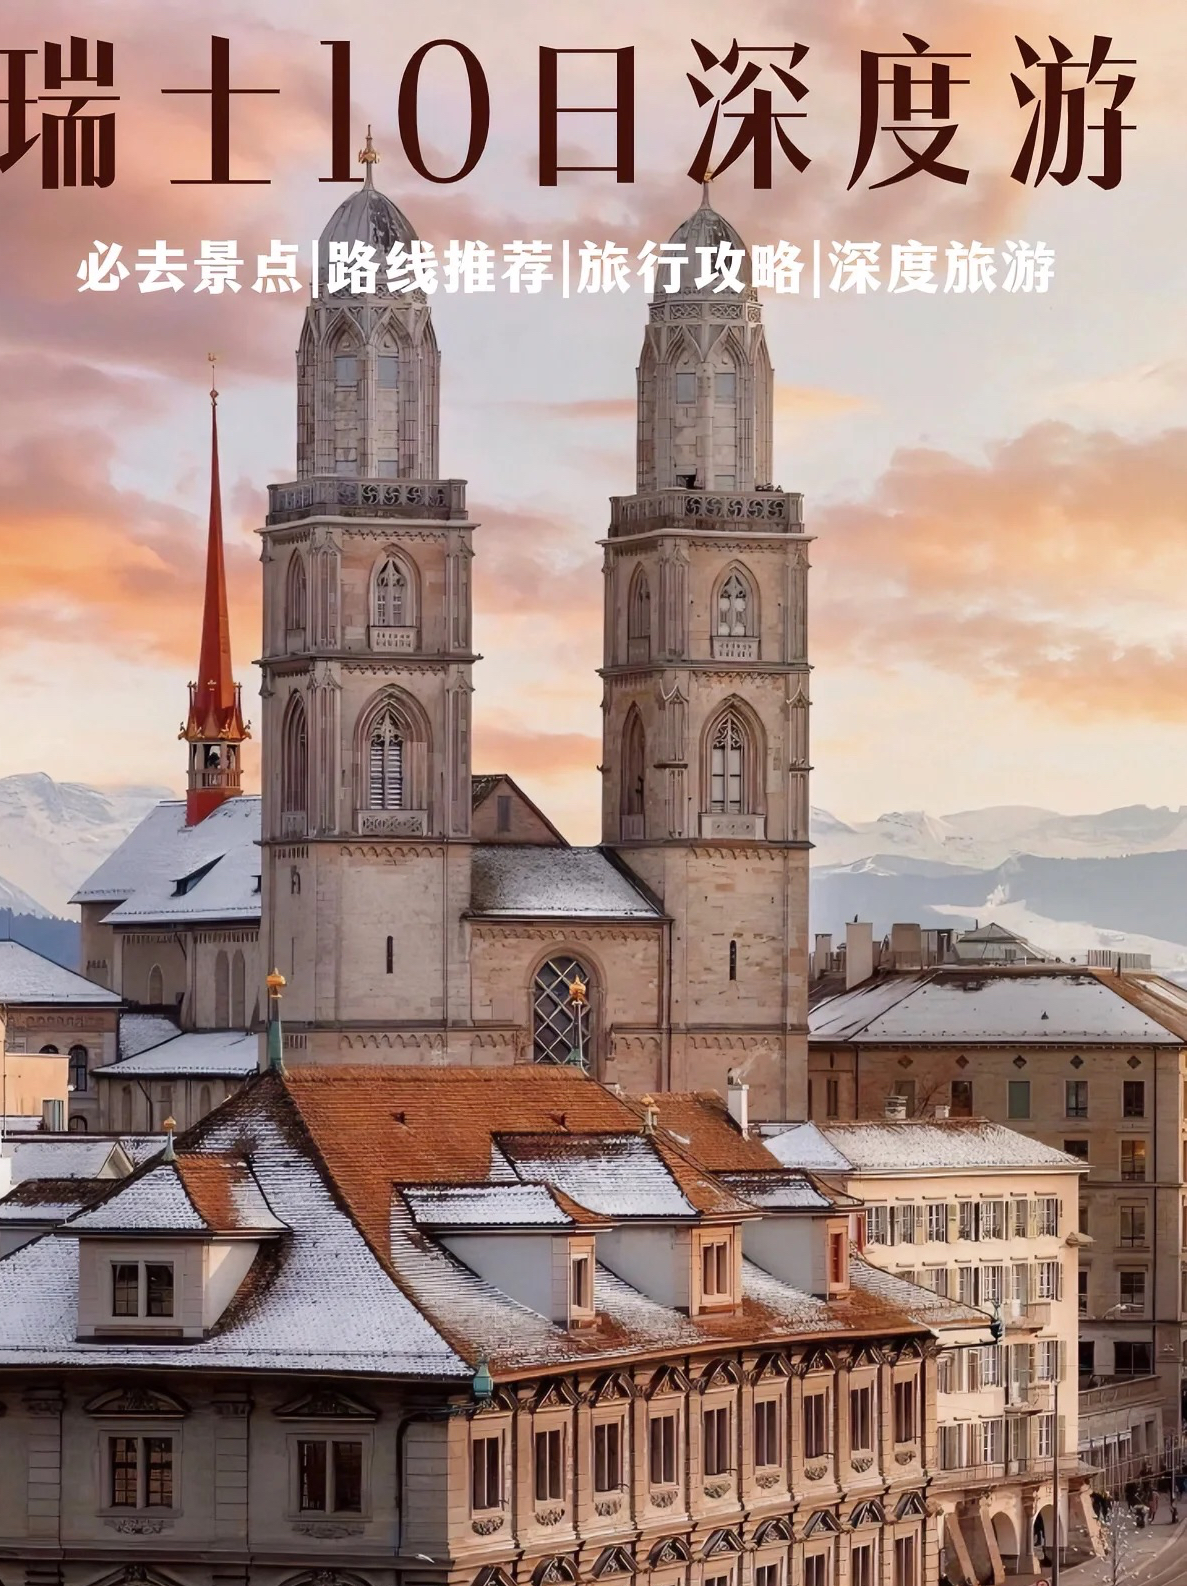 #中国对瑞士等6国试行免签 想去瑞士旅行的存下吧!很难找全的旅游攻略    “中国对瑞士试行免签政策